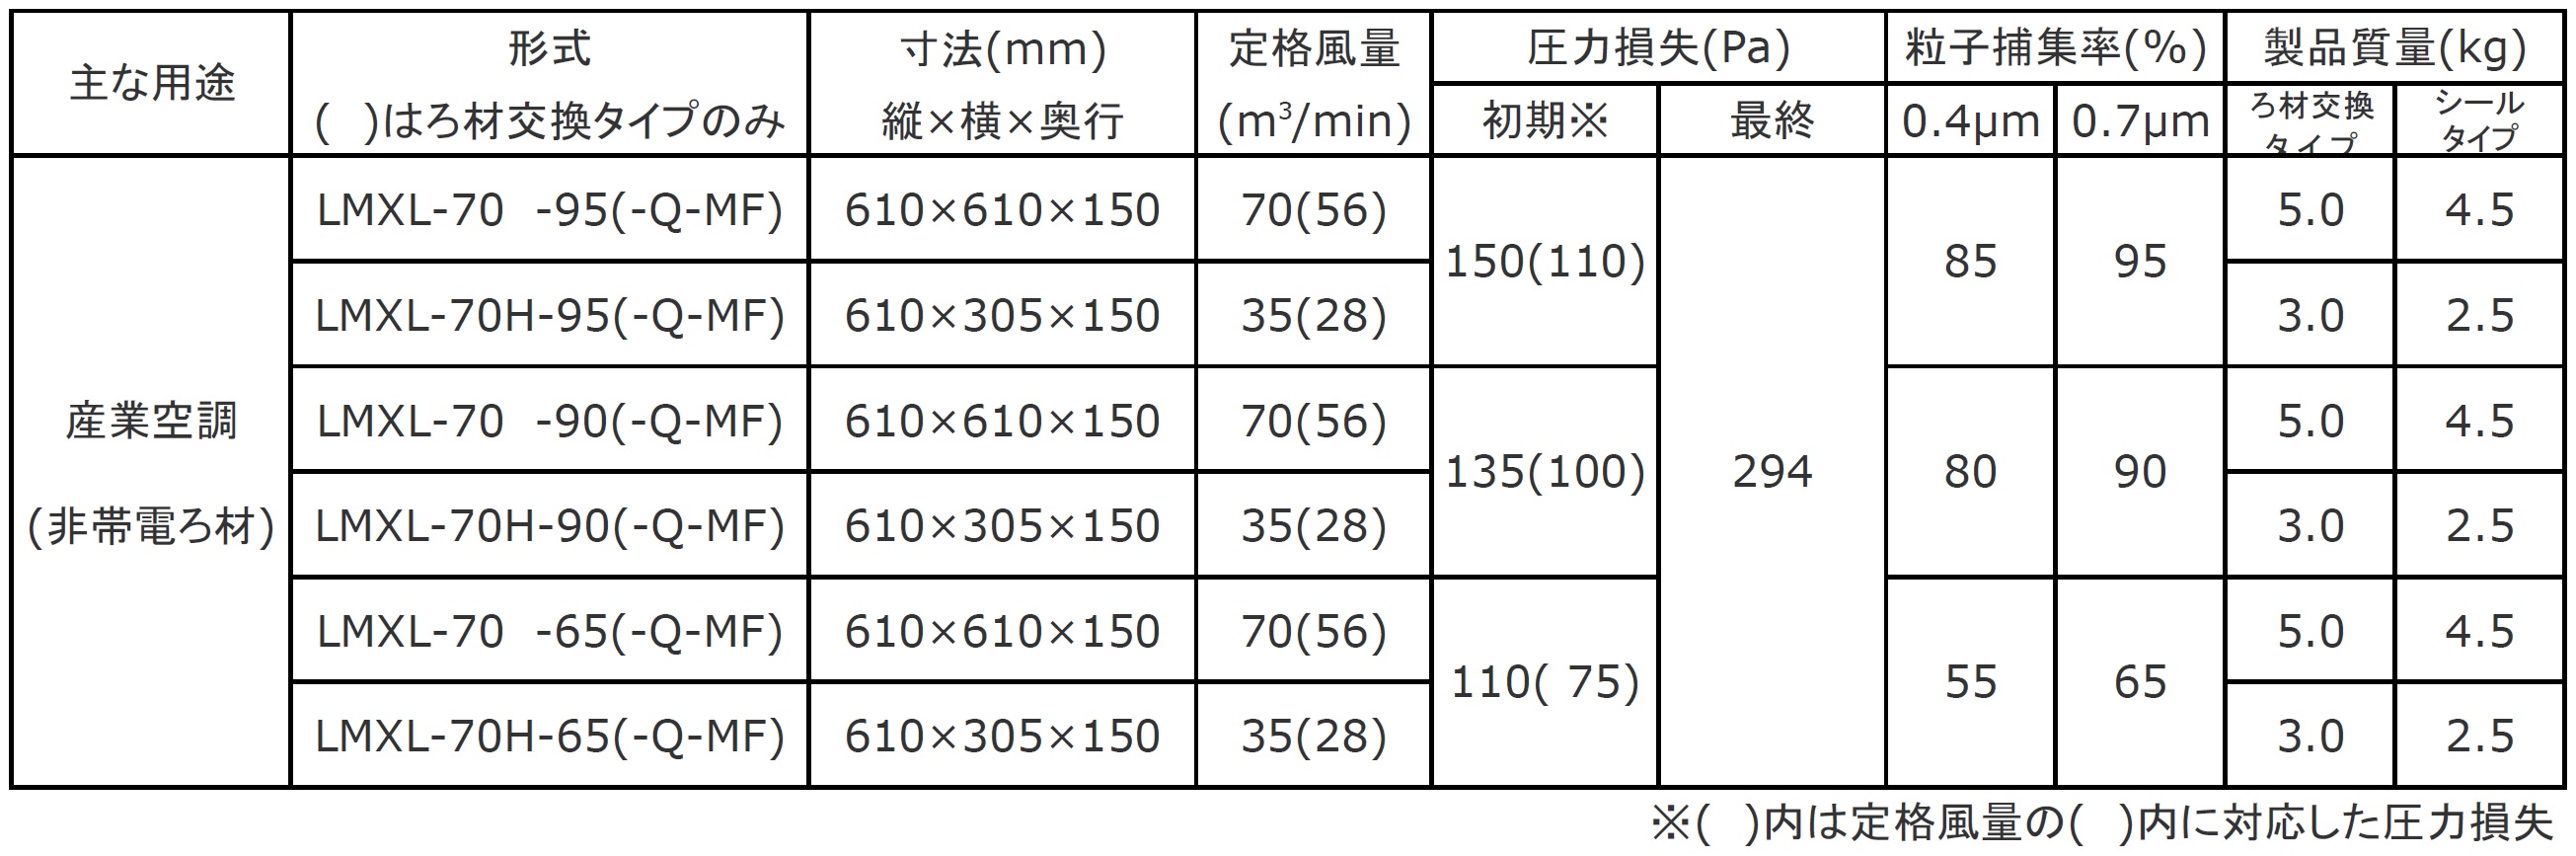 日本無機 塩害対策低圧力損失中性能フィルタ レルフィ 610X610X150 LMXL-70-65S 期間限定 ポイント10倍 - 17